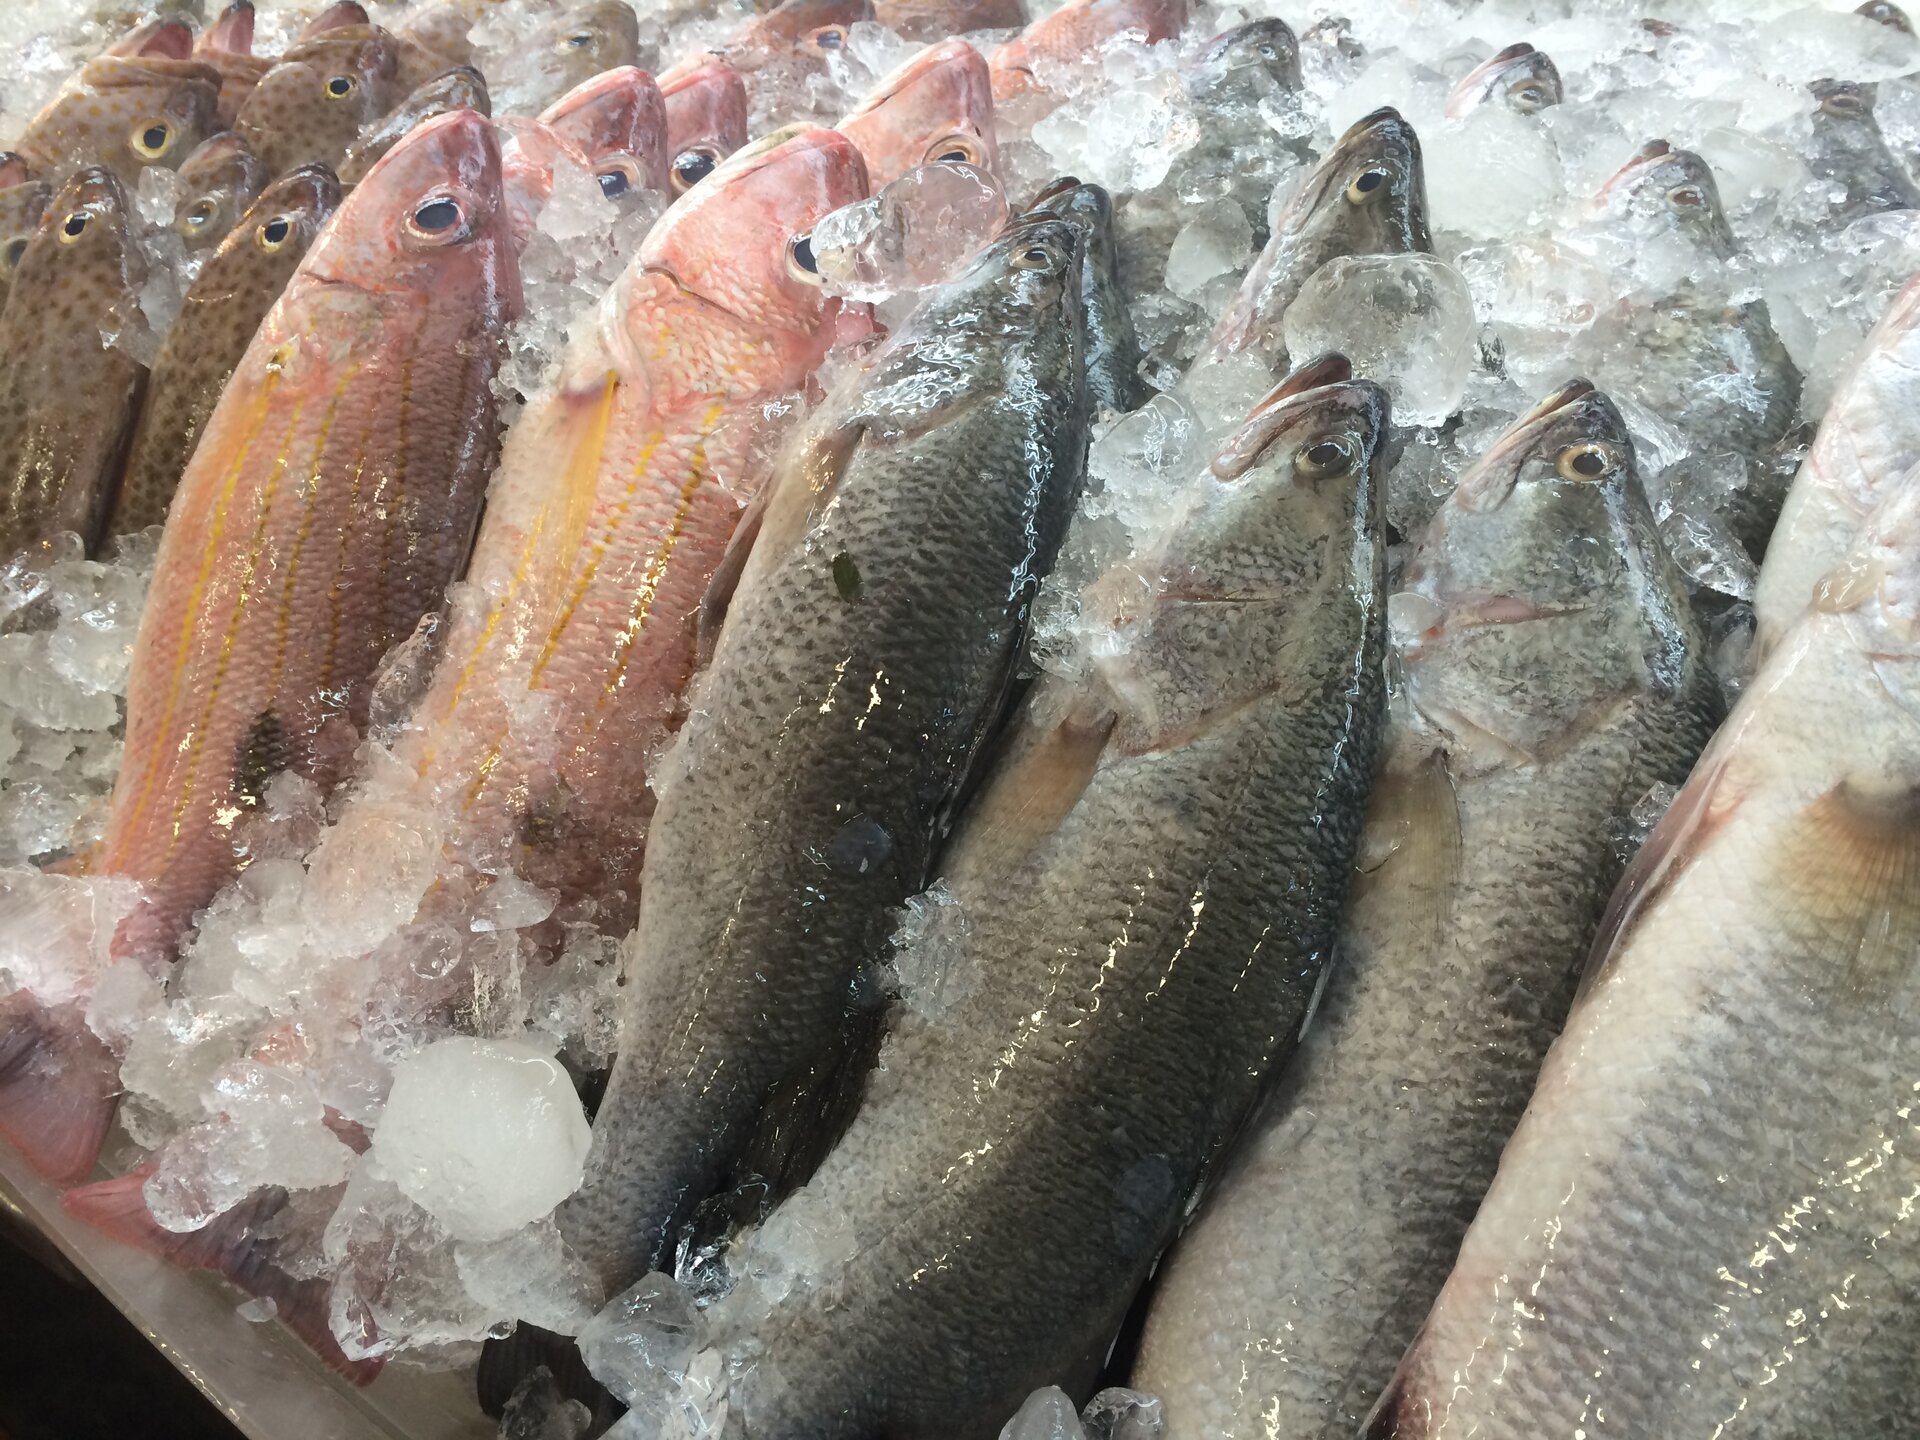 Fotografia przedstawia świeże ryby wyłożone na półce sklepowej i obłożone lodem.